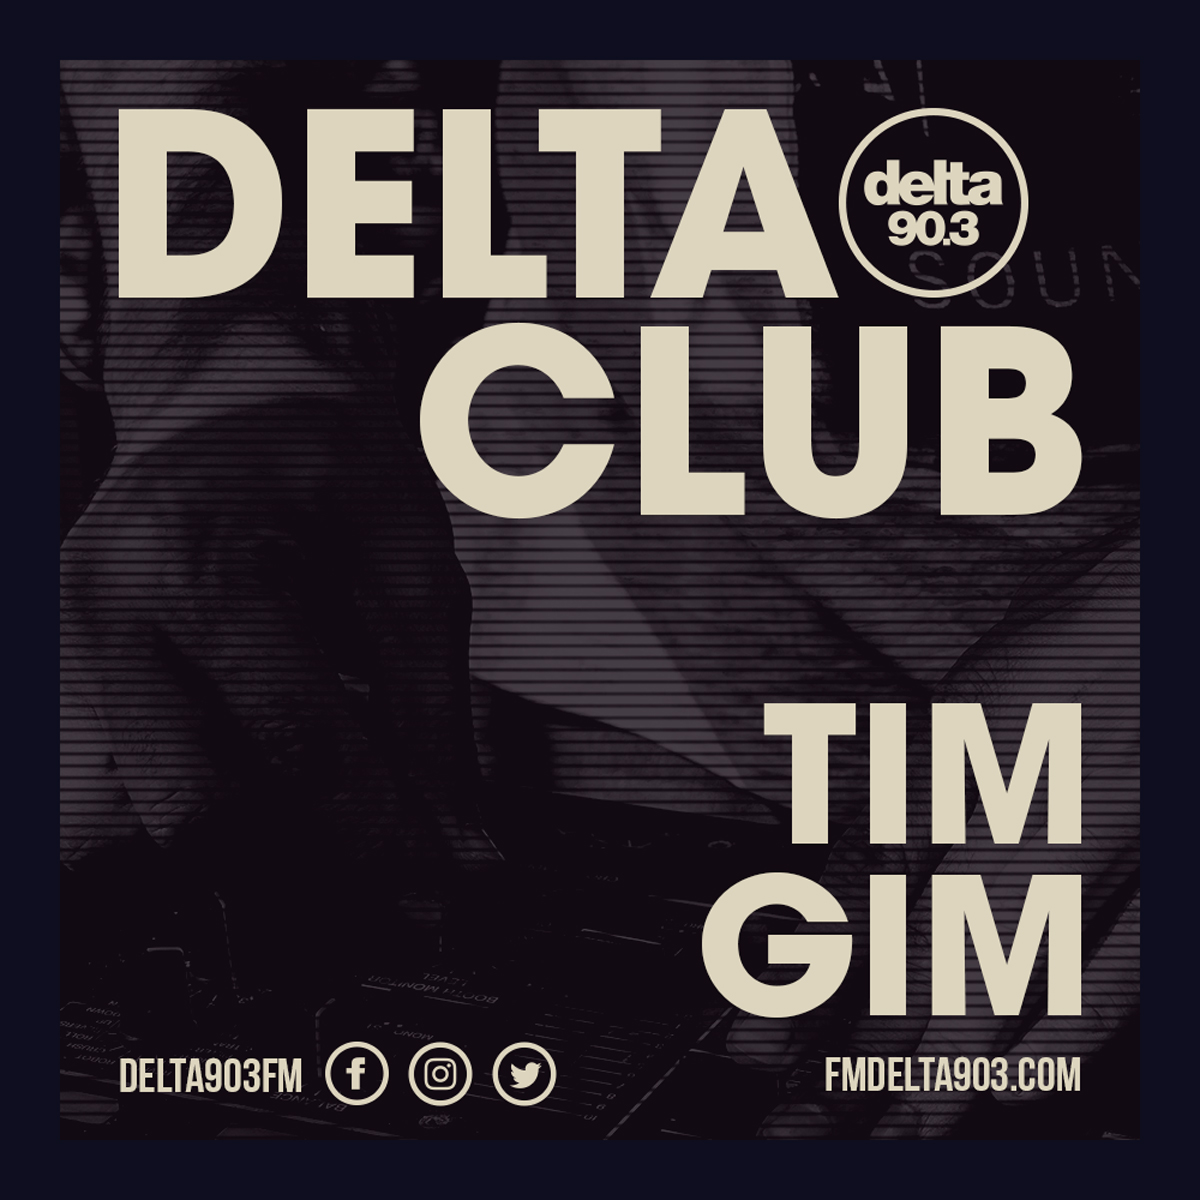 Delta Podcasts - Delta Club presents Tim Gim (05.07.2018)